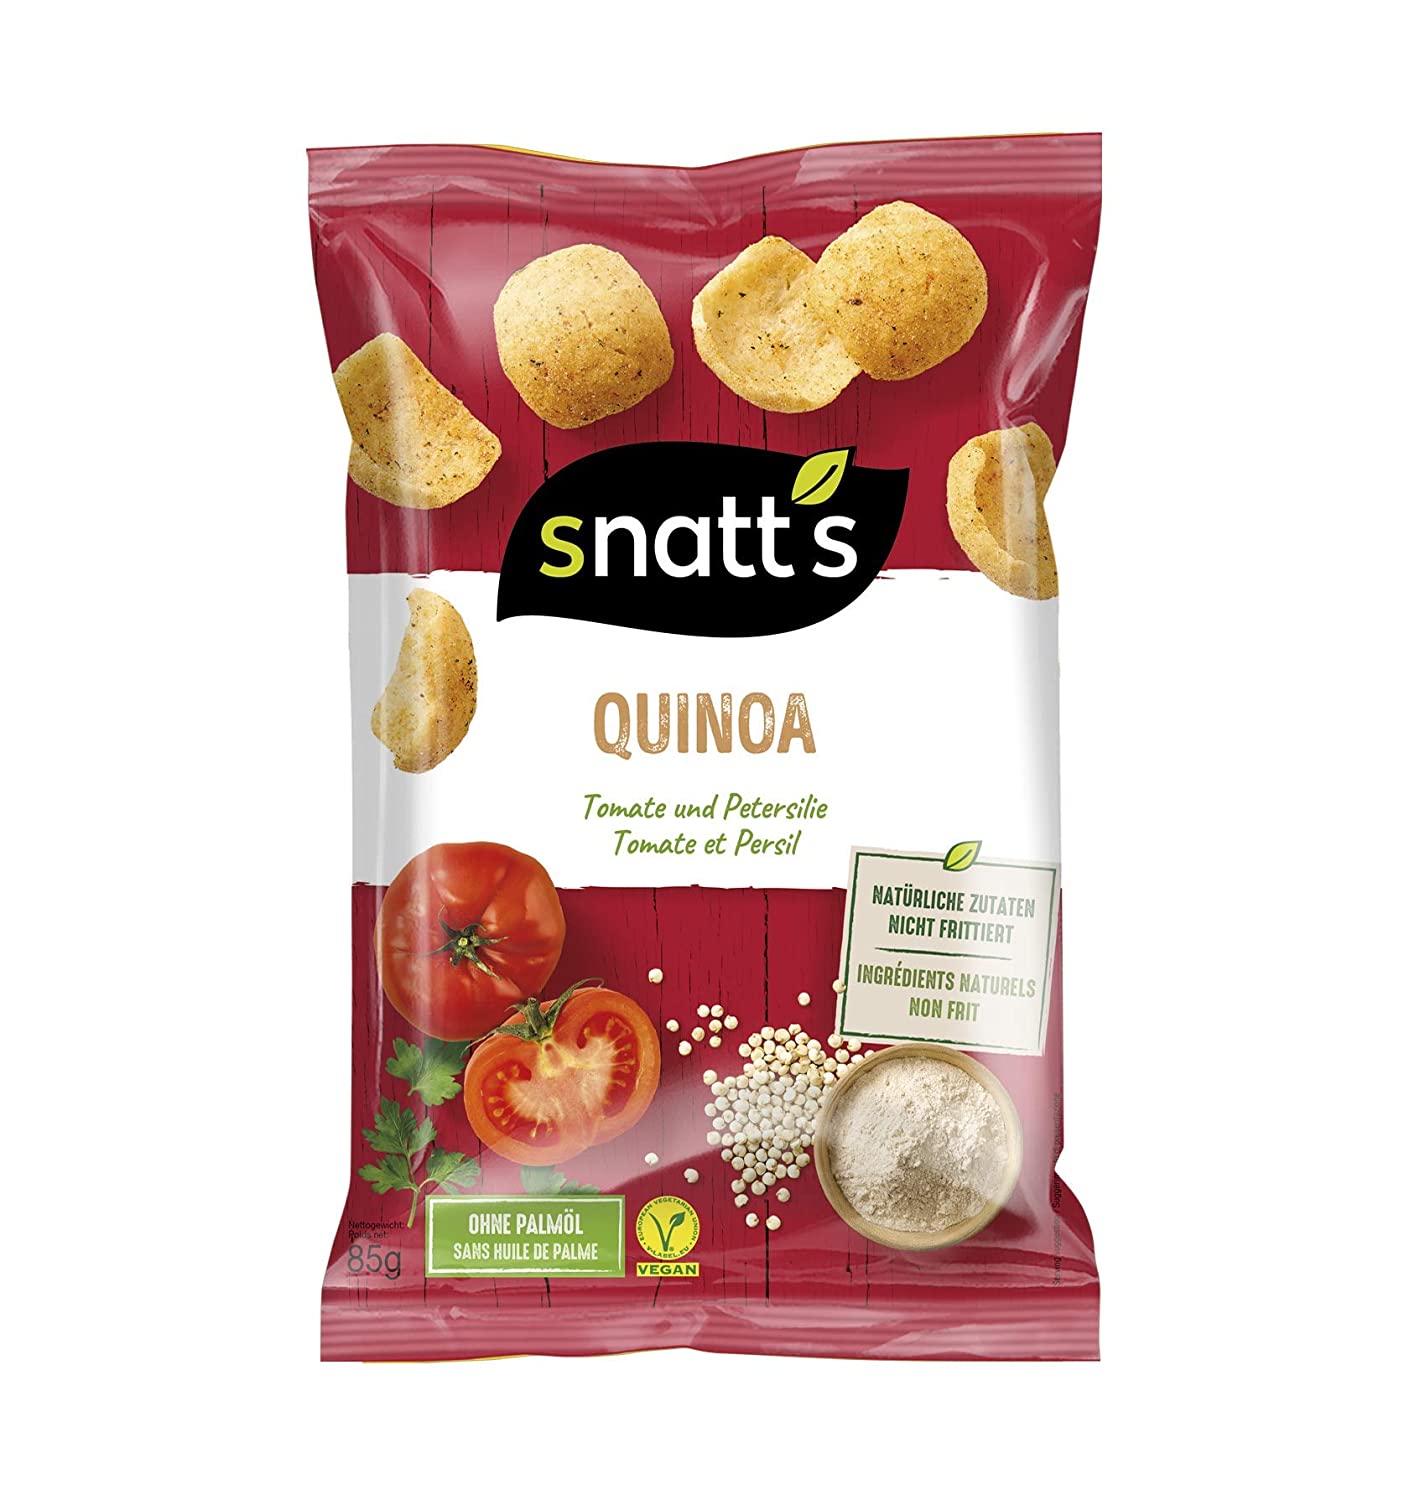 Snatt's Quinoa Chips (1 x 85g) - gepufft statt frittiert